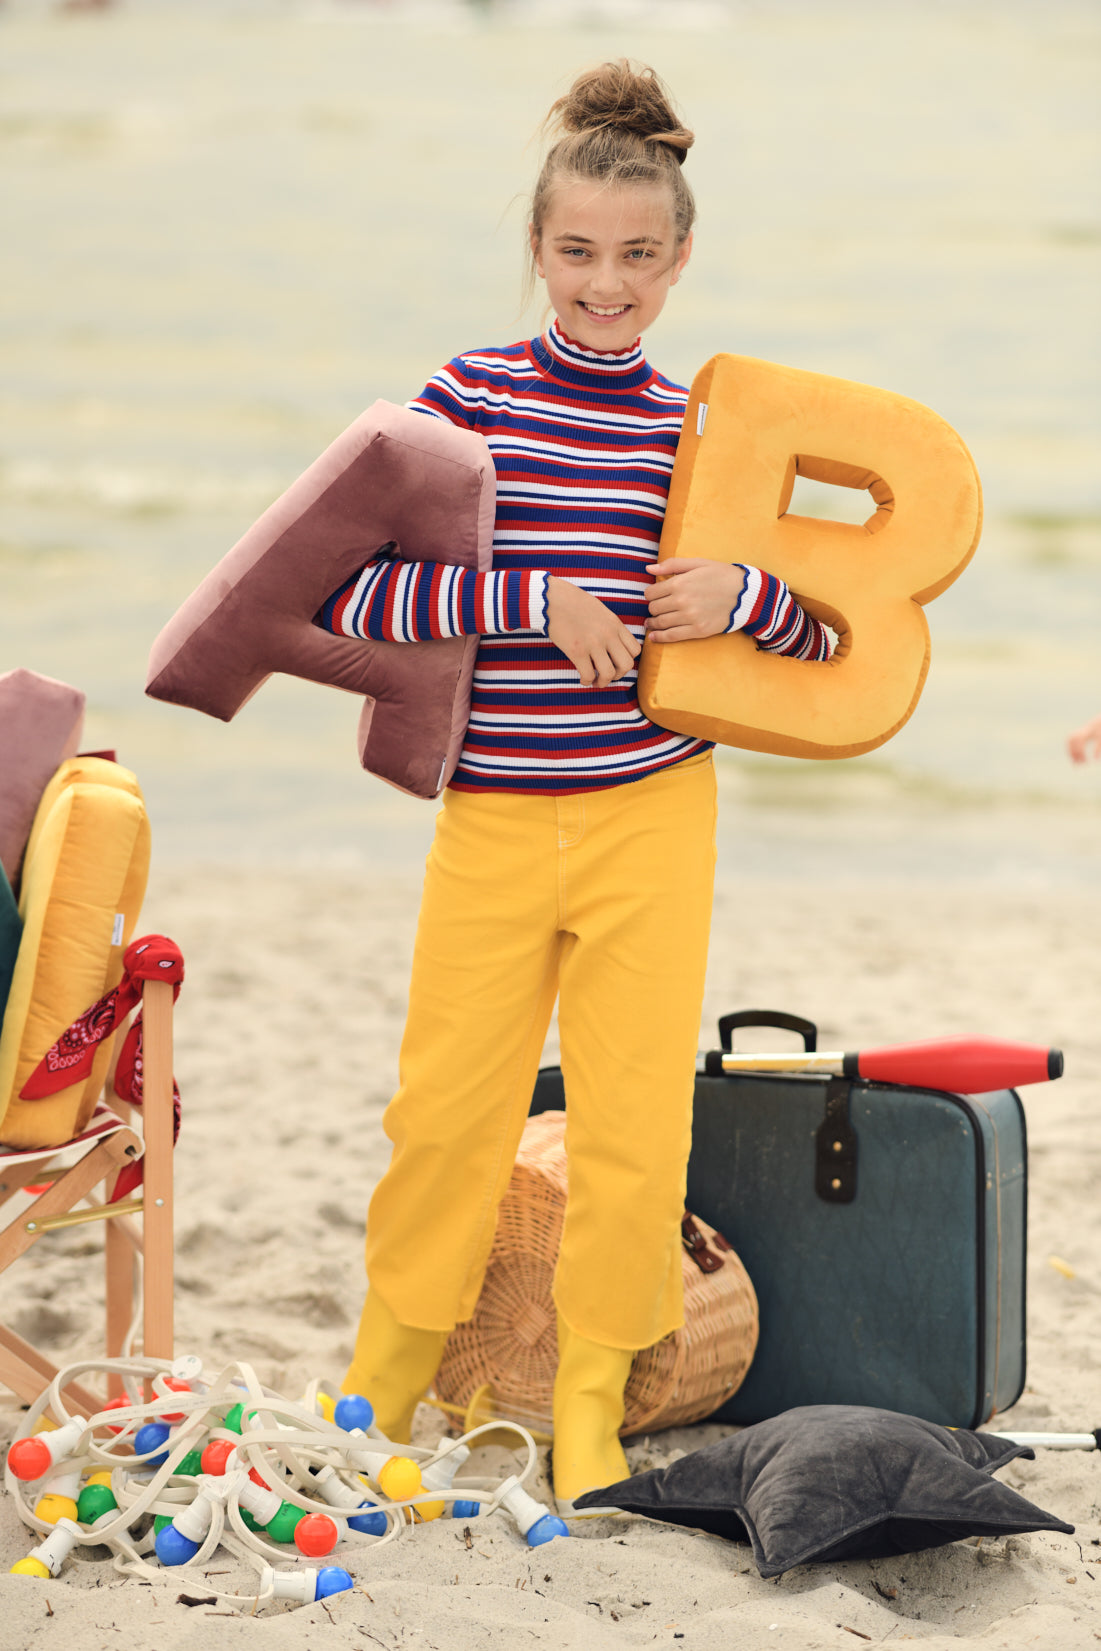 czarująca dziewczynka na plaży trzyma w ręce dwie poduszki literki welurowe od Bettys Home